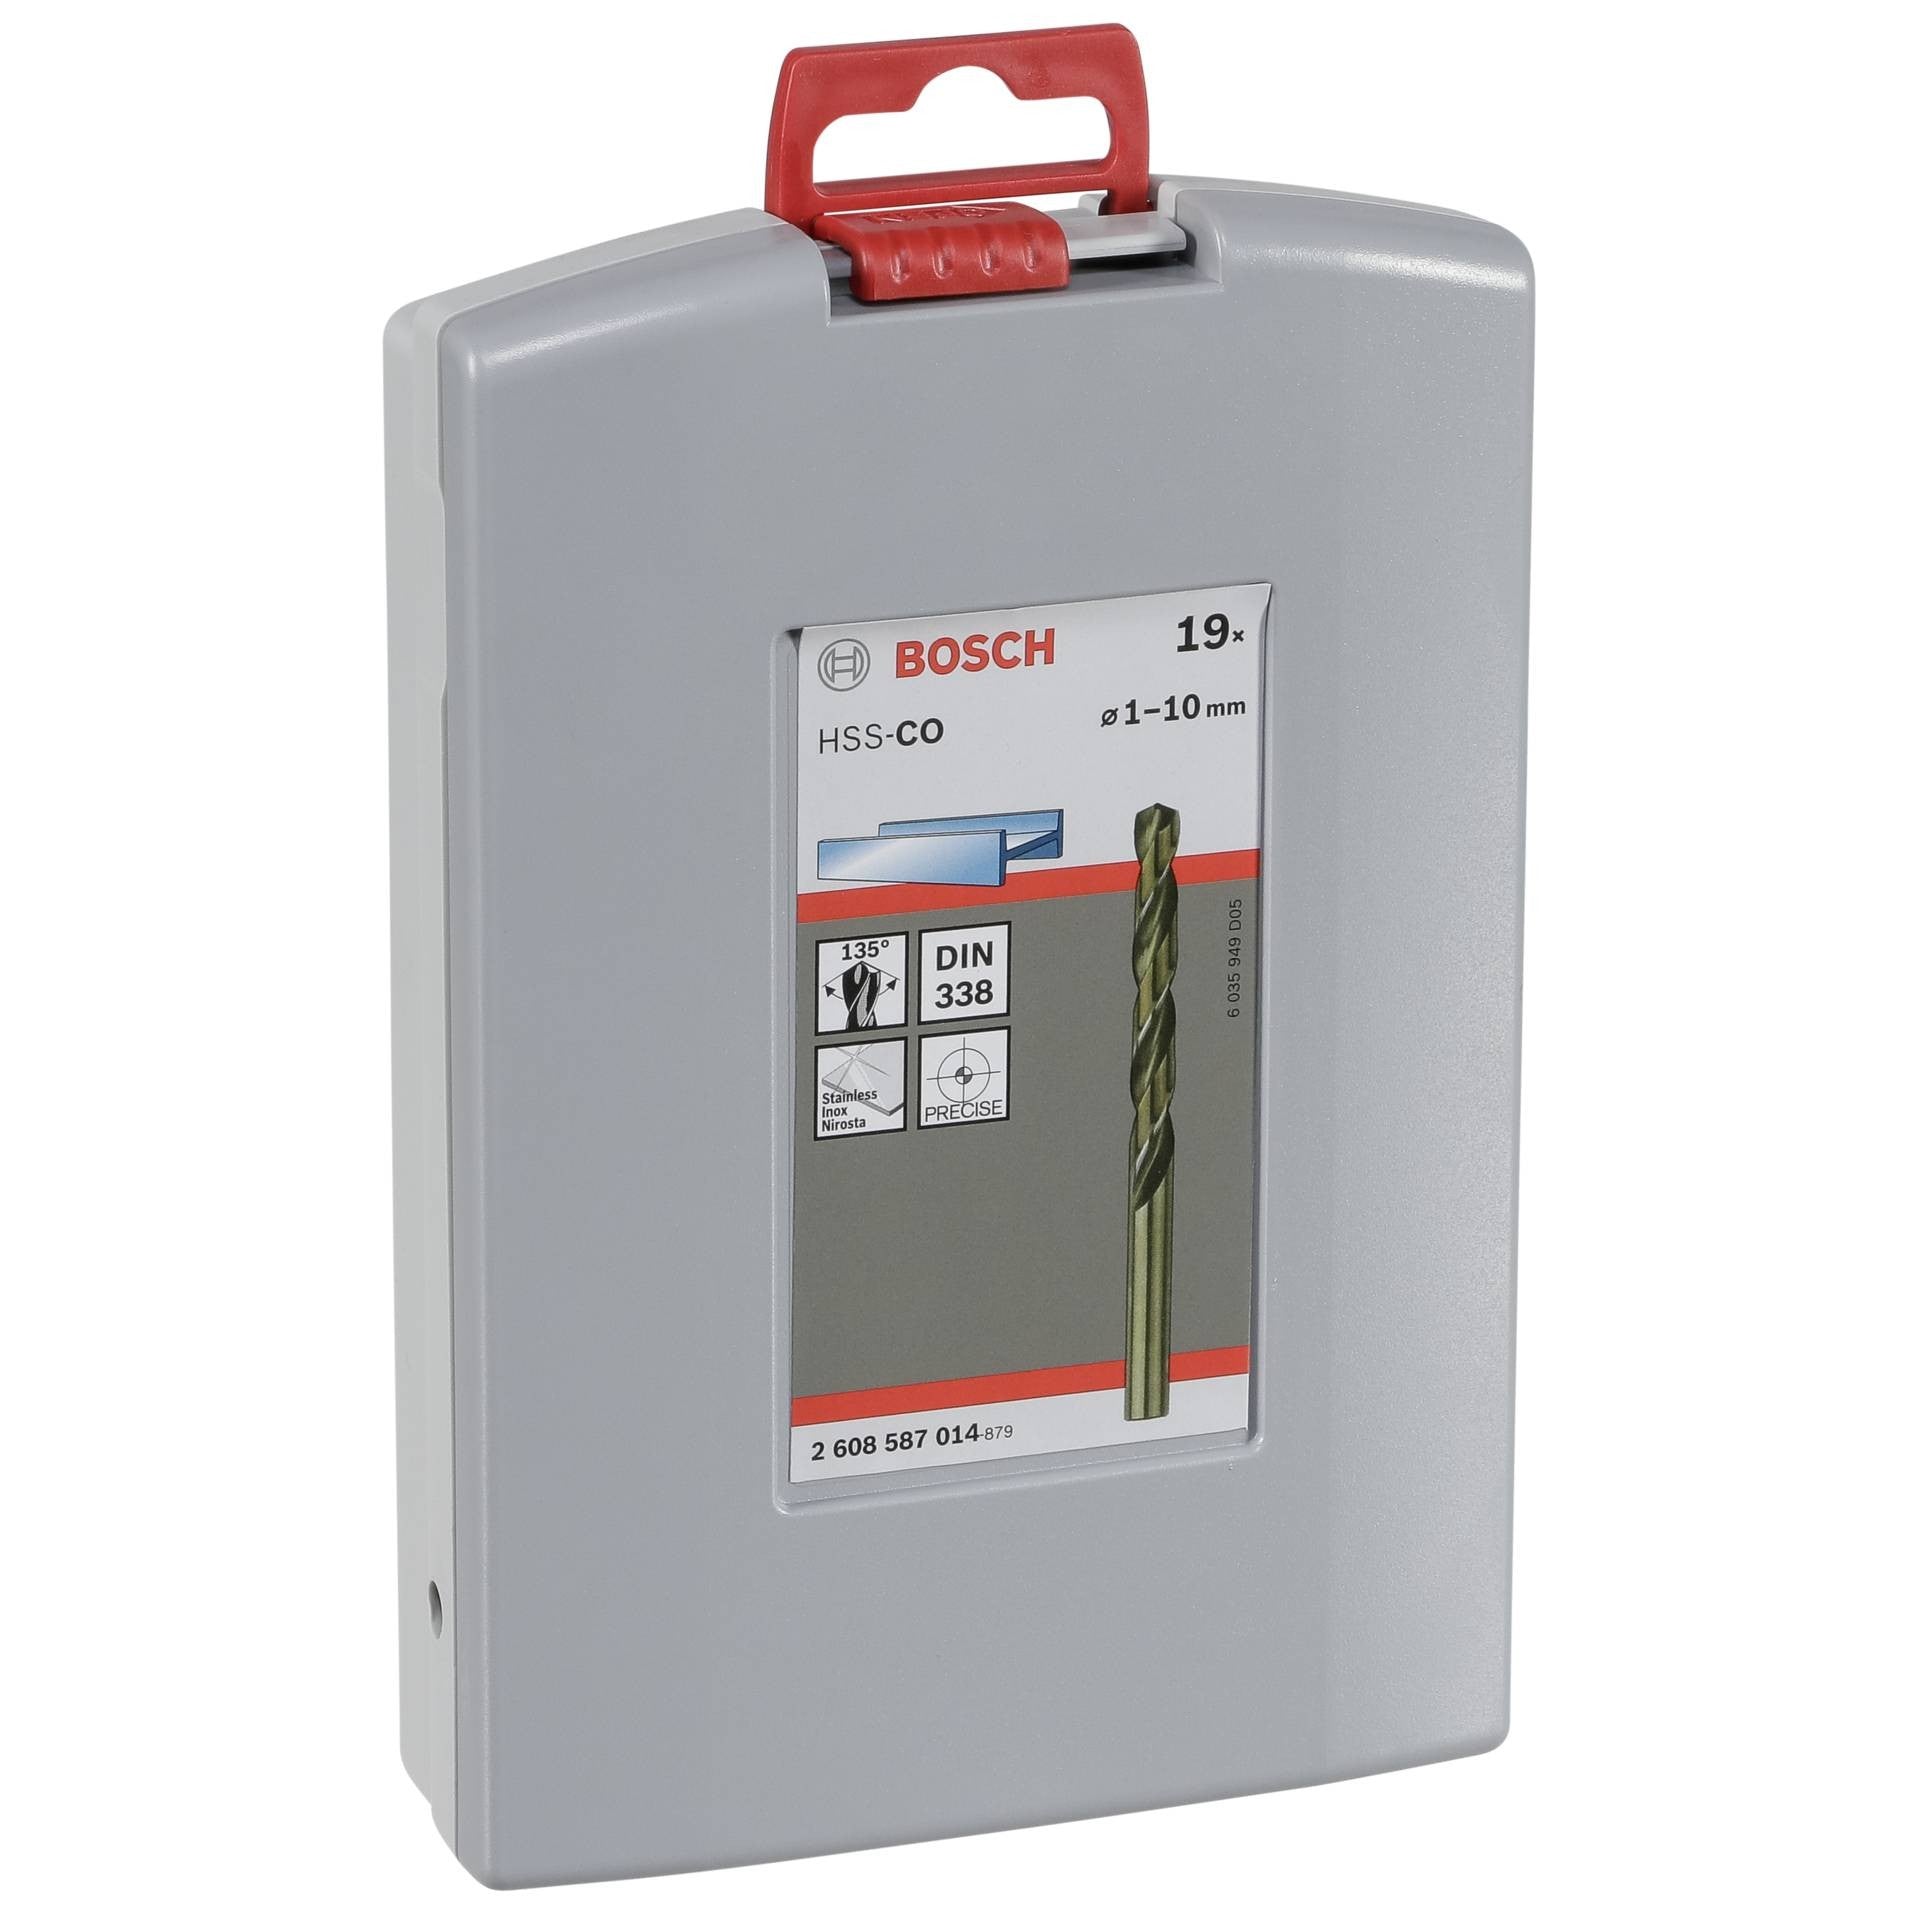 Bosch ProBox set HSS-Co, DIN 338, 1-10 mm, 19 pc 2608587014 Power Tool Services